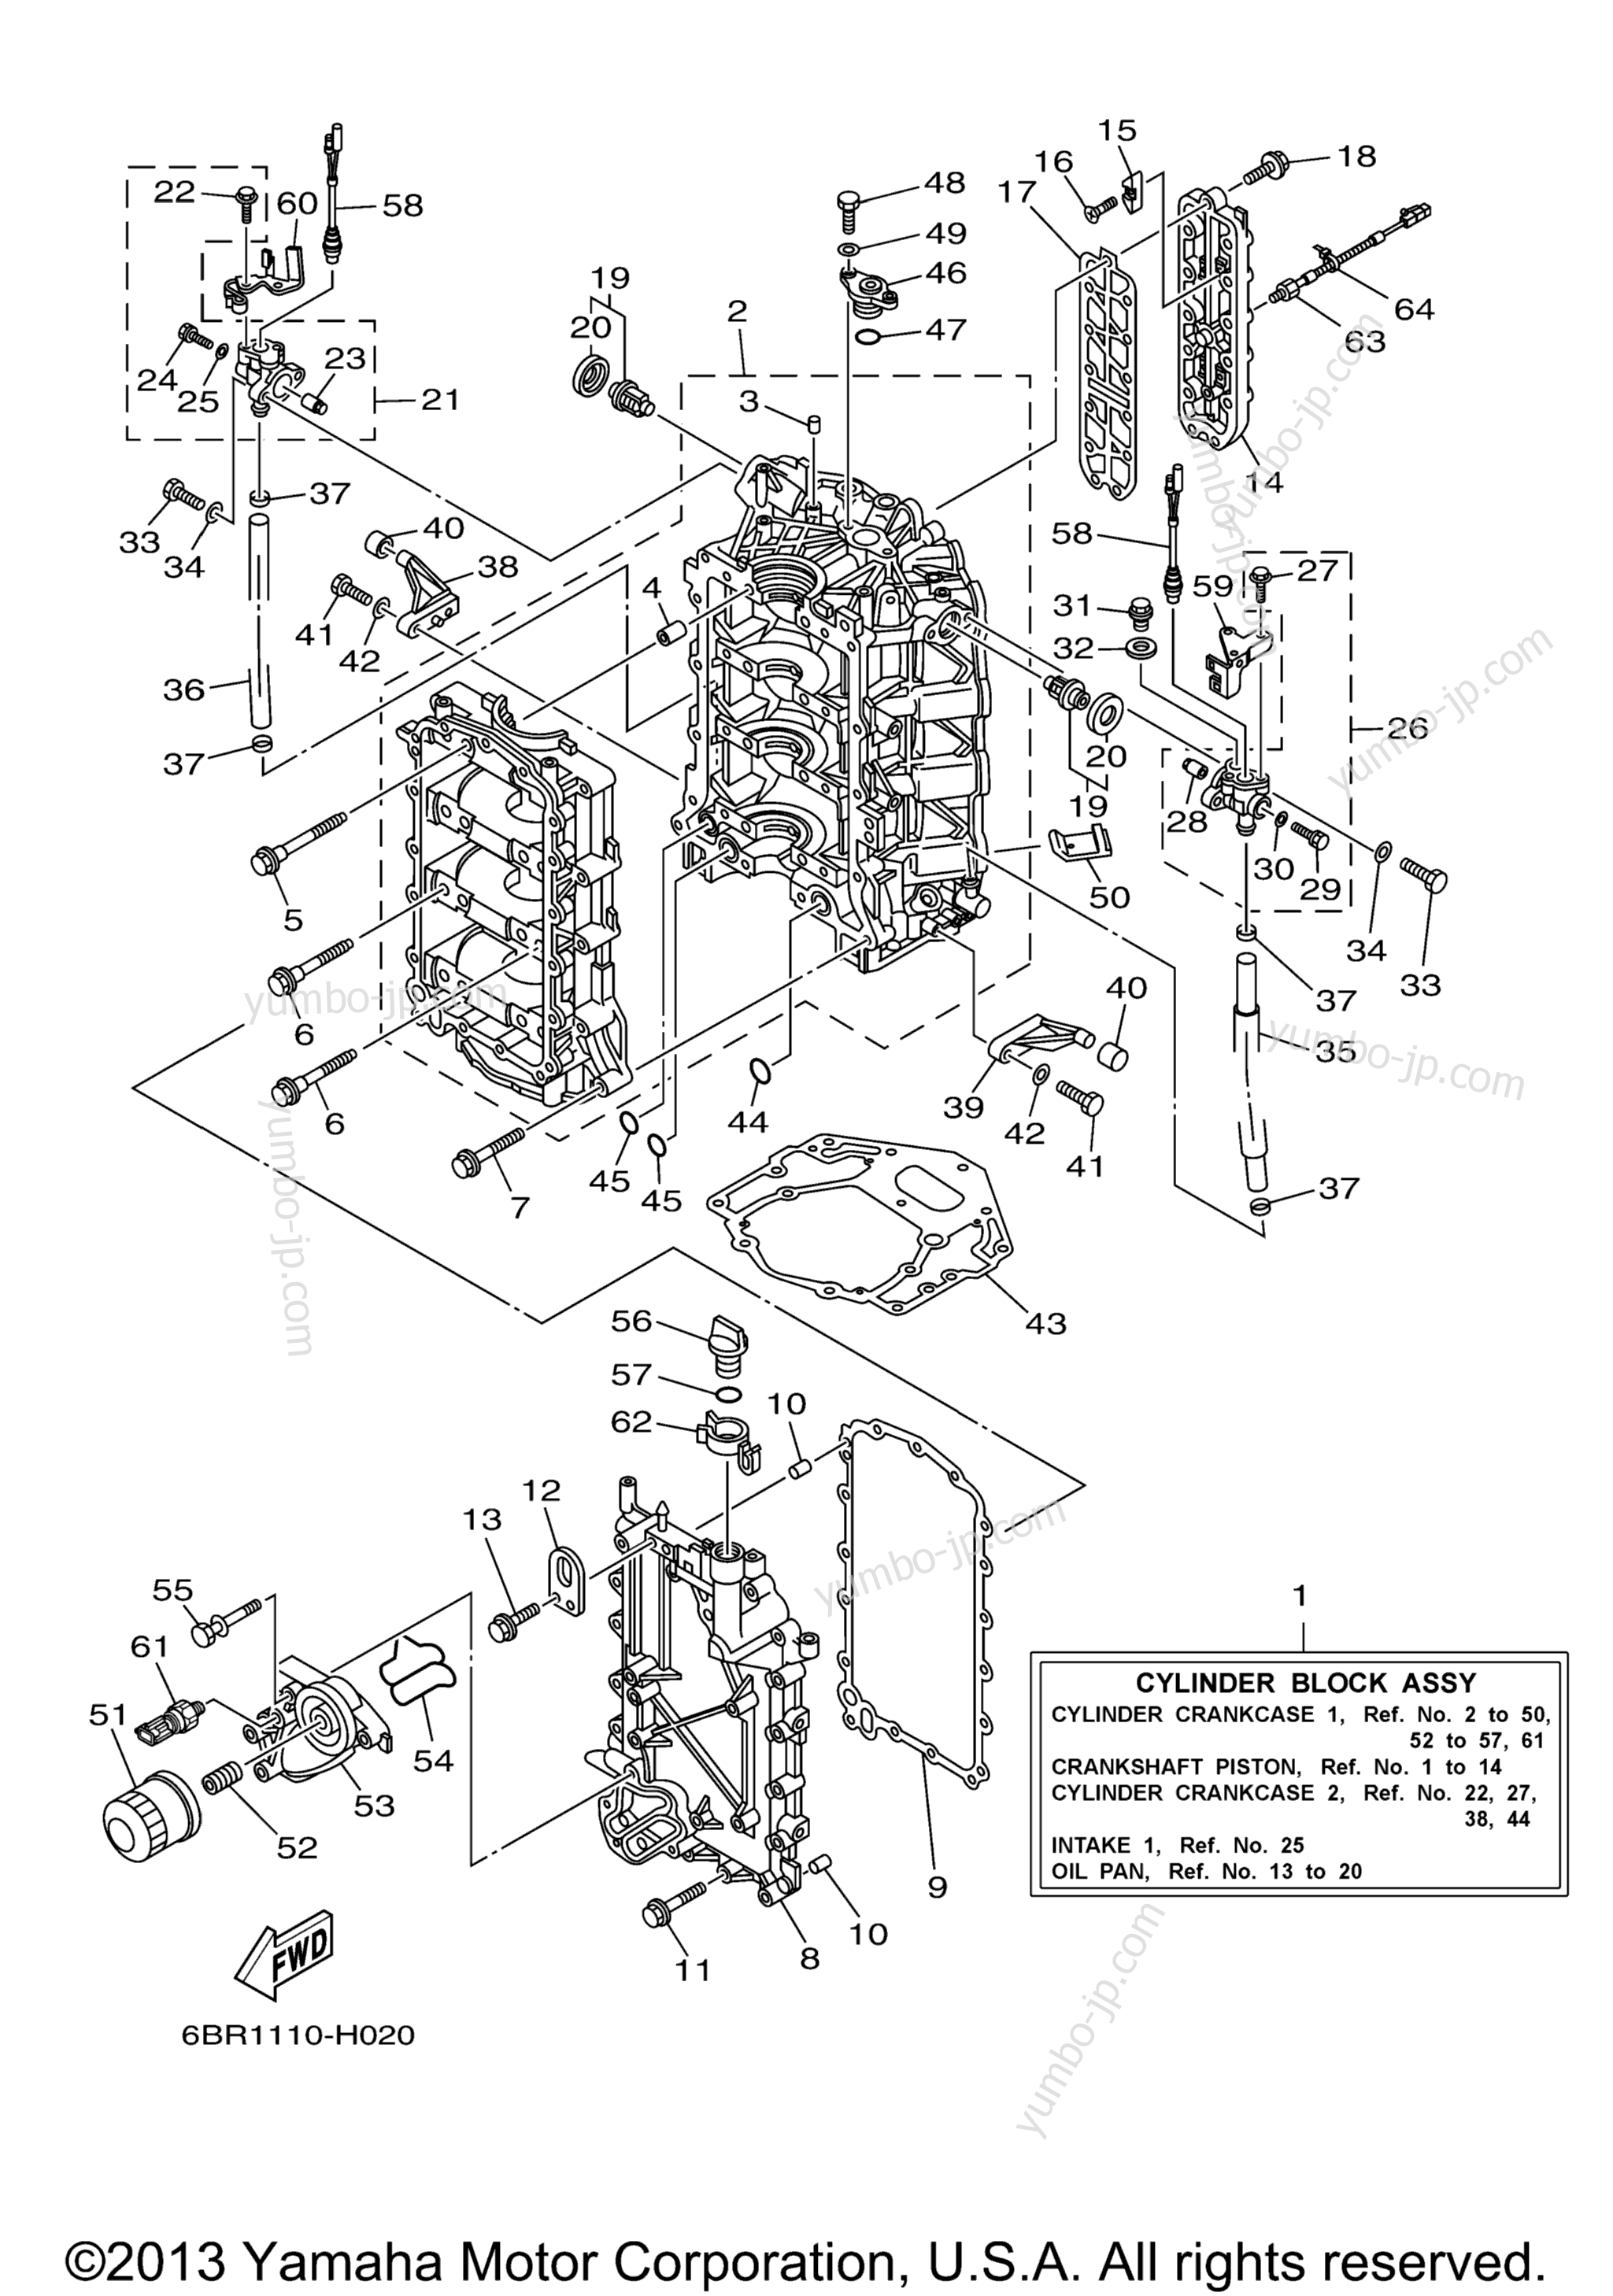 Cylinder Crankcase 1 для лодочных моторов YAMAHA LF250BTUR (0409) 2006 г.